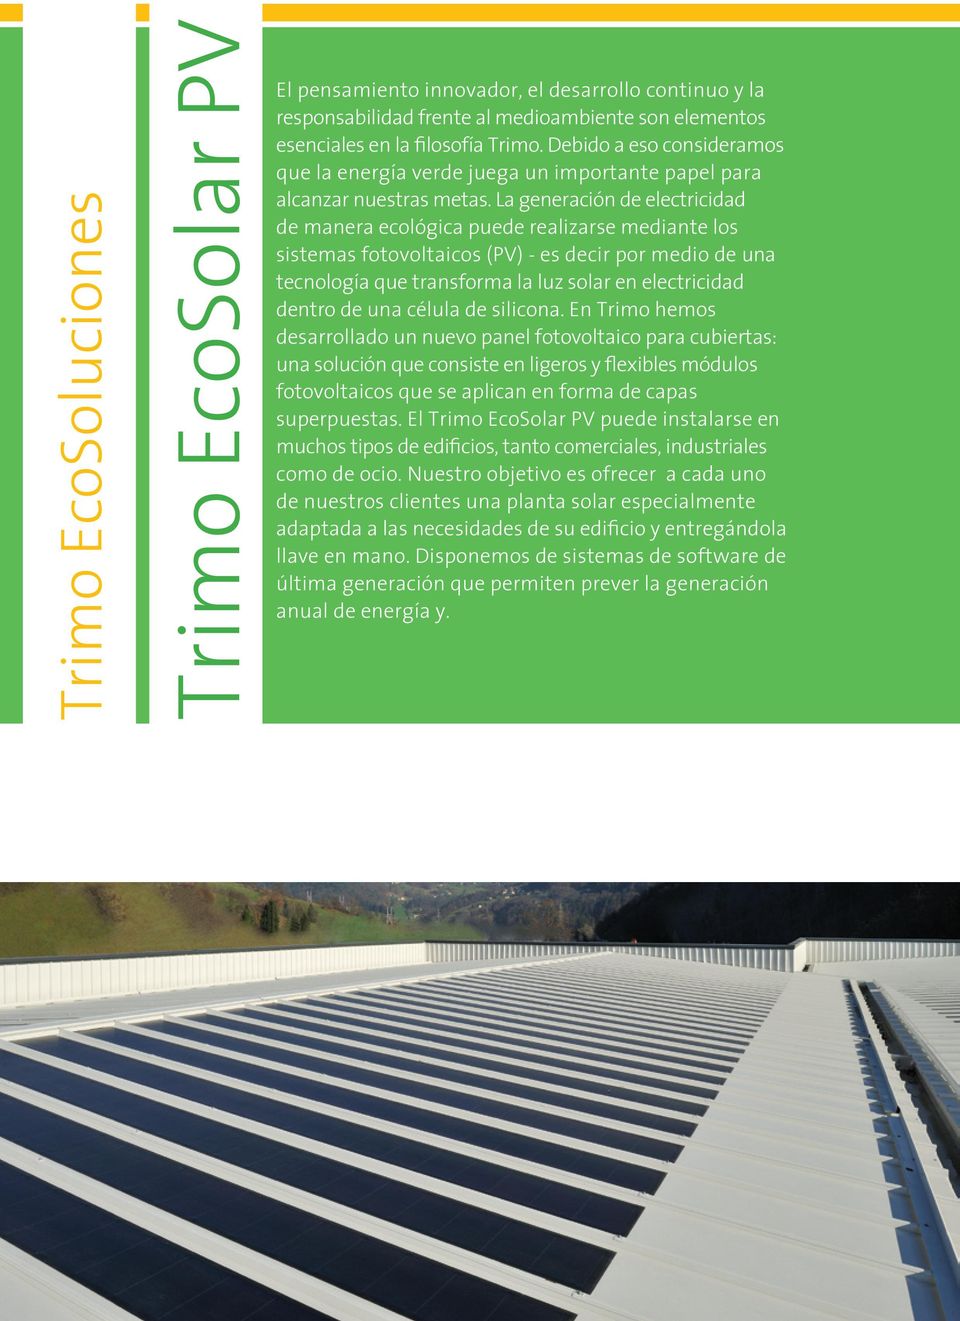 La generación de electricidad de manera ecológica puede realizarse mediante los sistemas fotovoltaicos (PV) - es decir por medio de una tecnología que transforma la luz solar en electricidad dentro